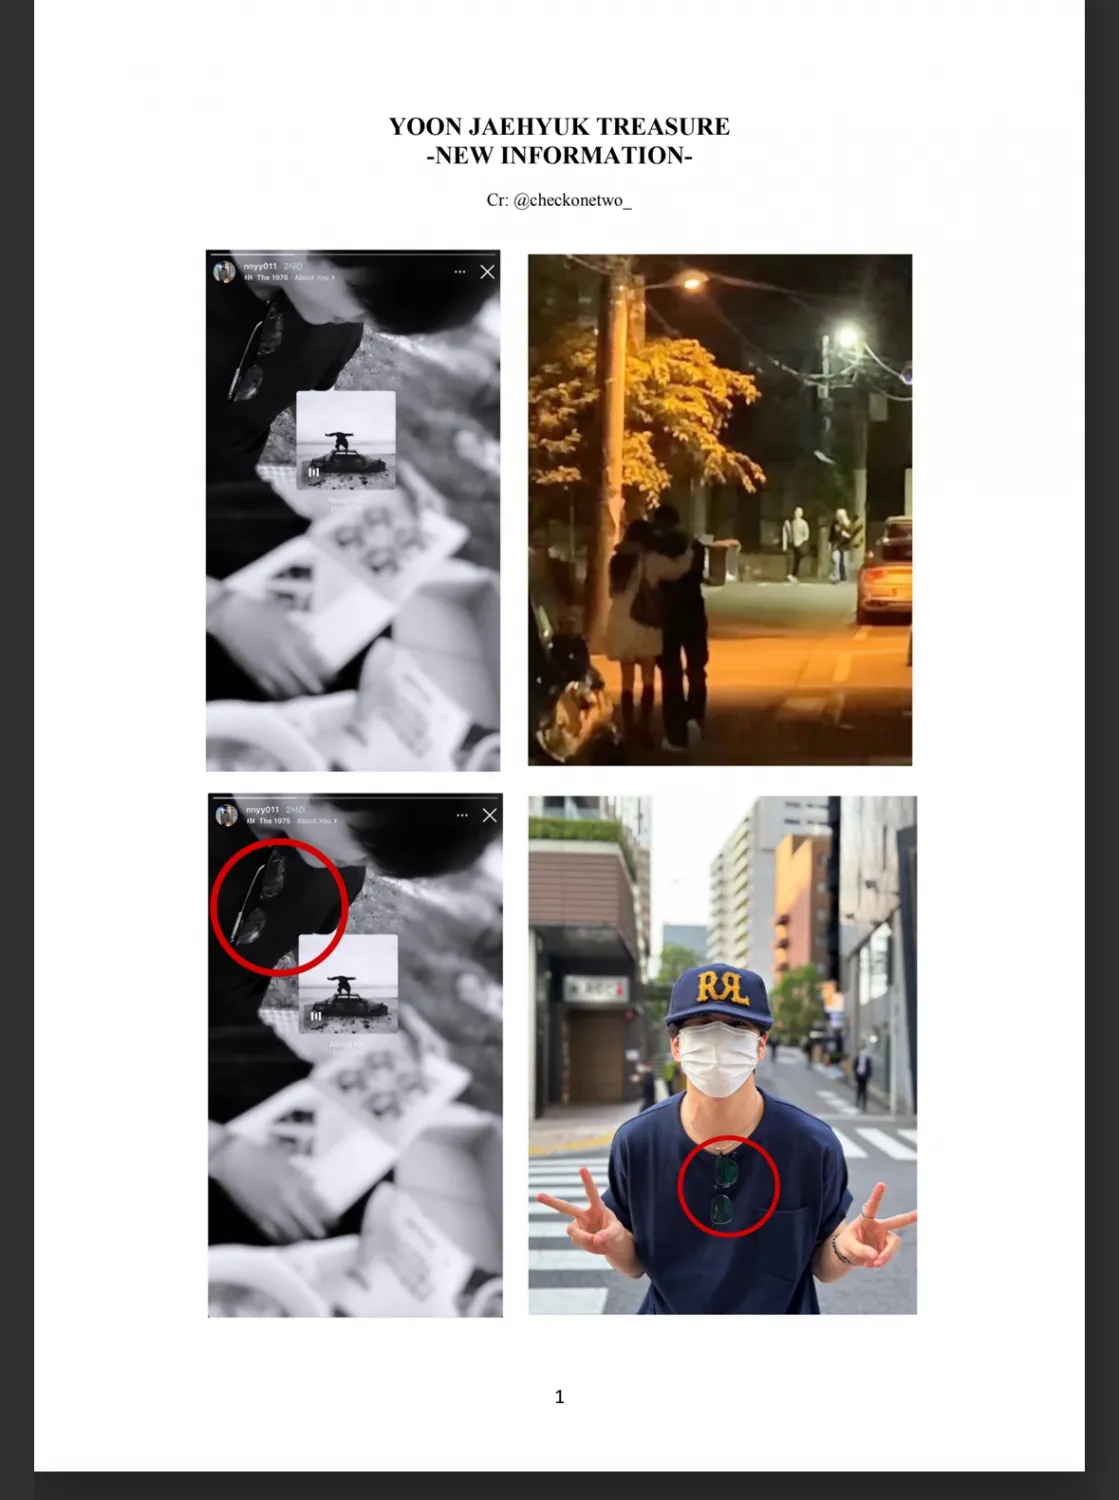 TREASURE Jaehyuk acusado de estar em um relacionamento + prova de divulgação de fãs